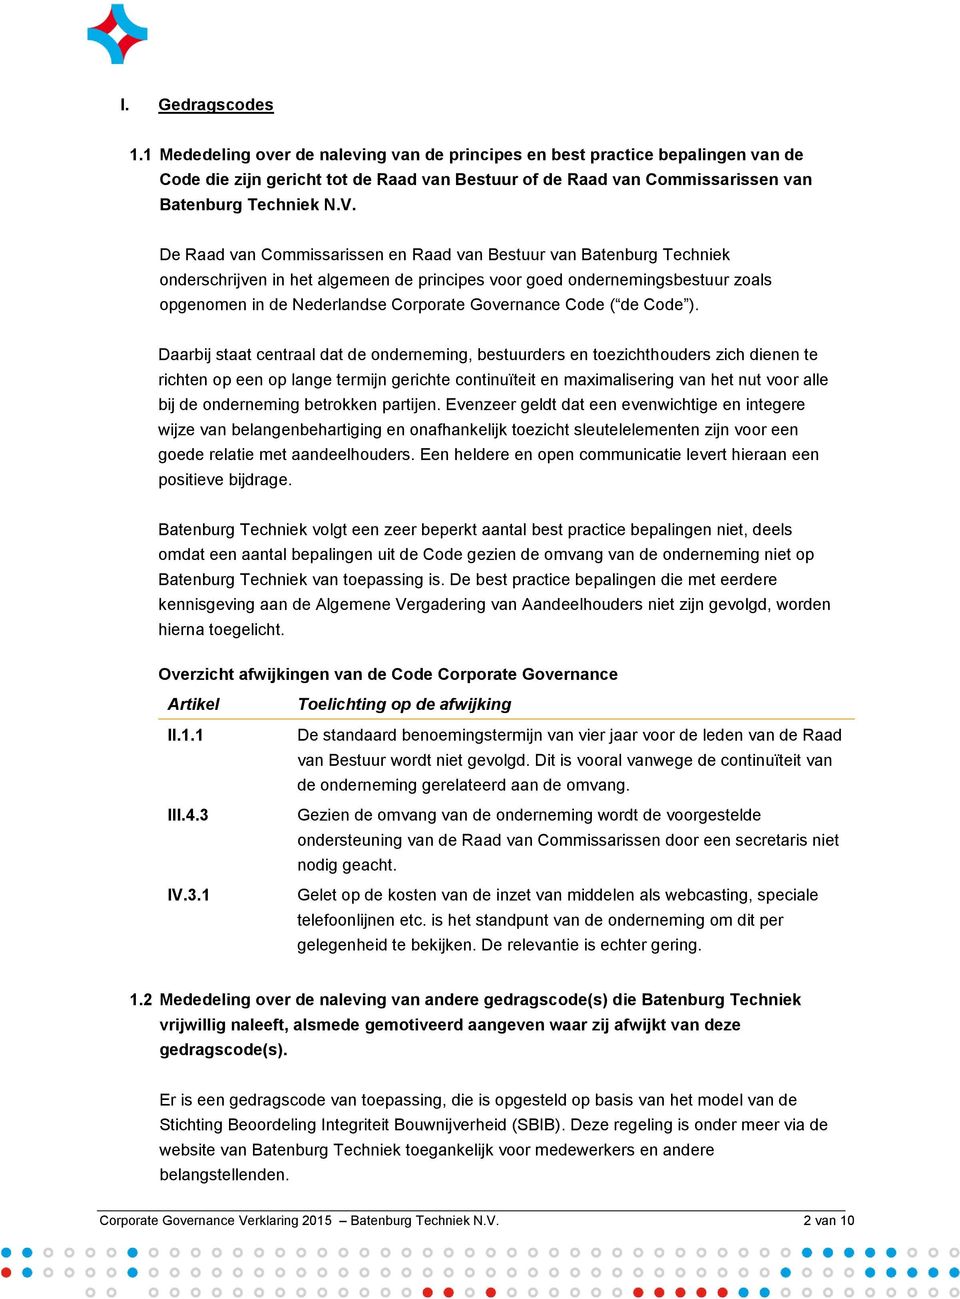 De Raad van Commissarissen en Raad van Bestuur van Batenburg Techniek onderschrijven in het algemeen de principes voor goed ondernemingsbestuur zoals opgenomen in de Nederlandse Corporate Governance